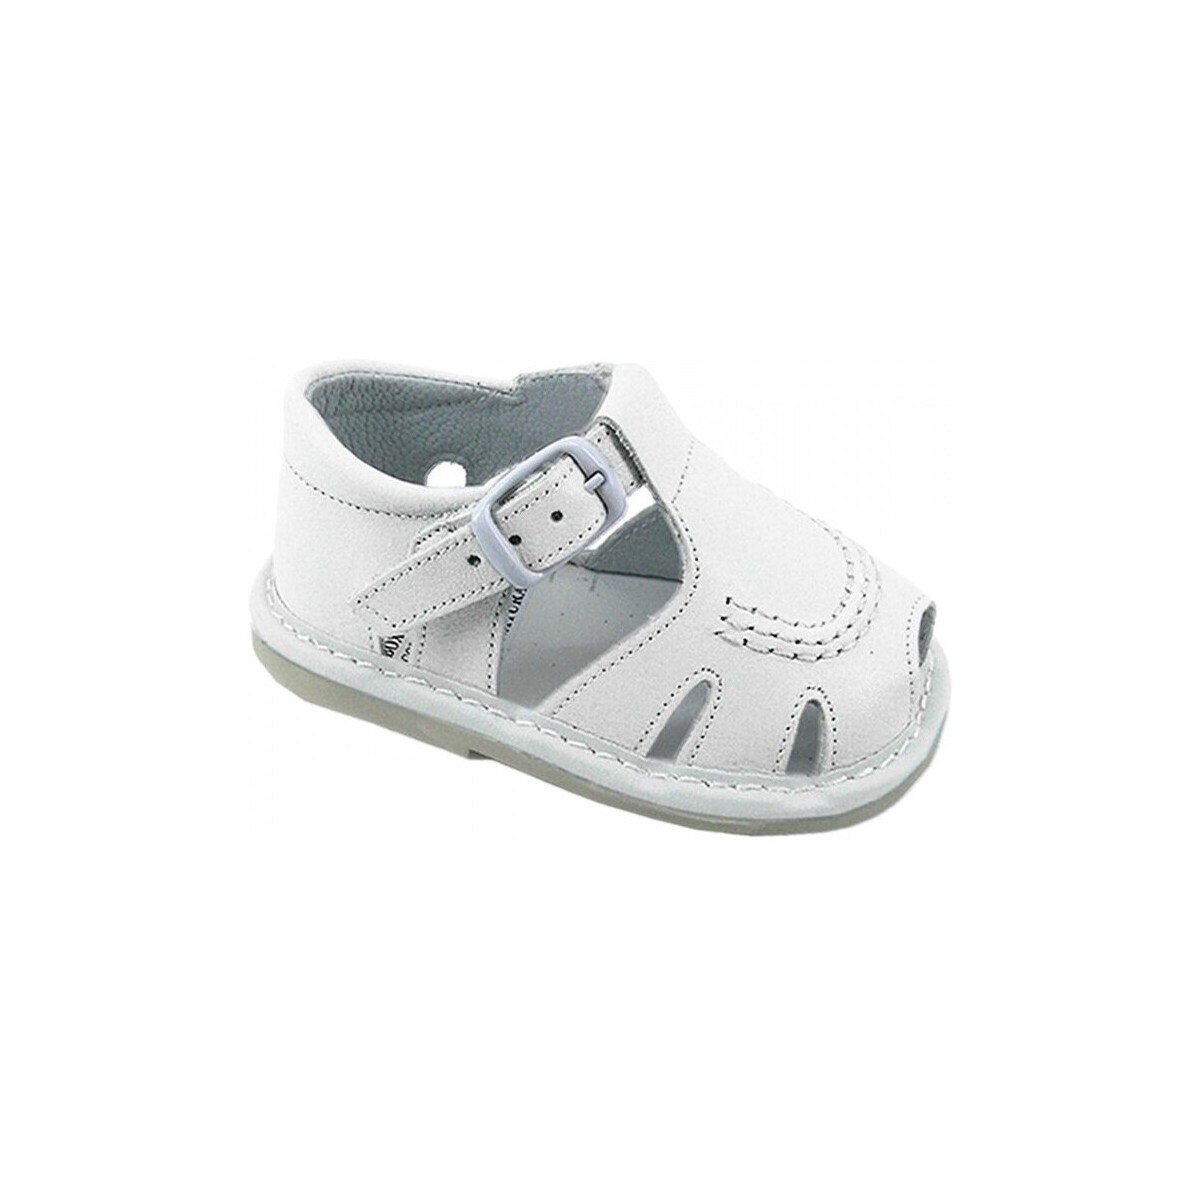 kengät Sandaalit ja avokkaat Colores 25387-15 Valkoinen